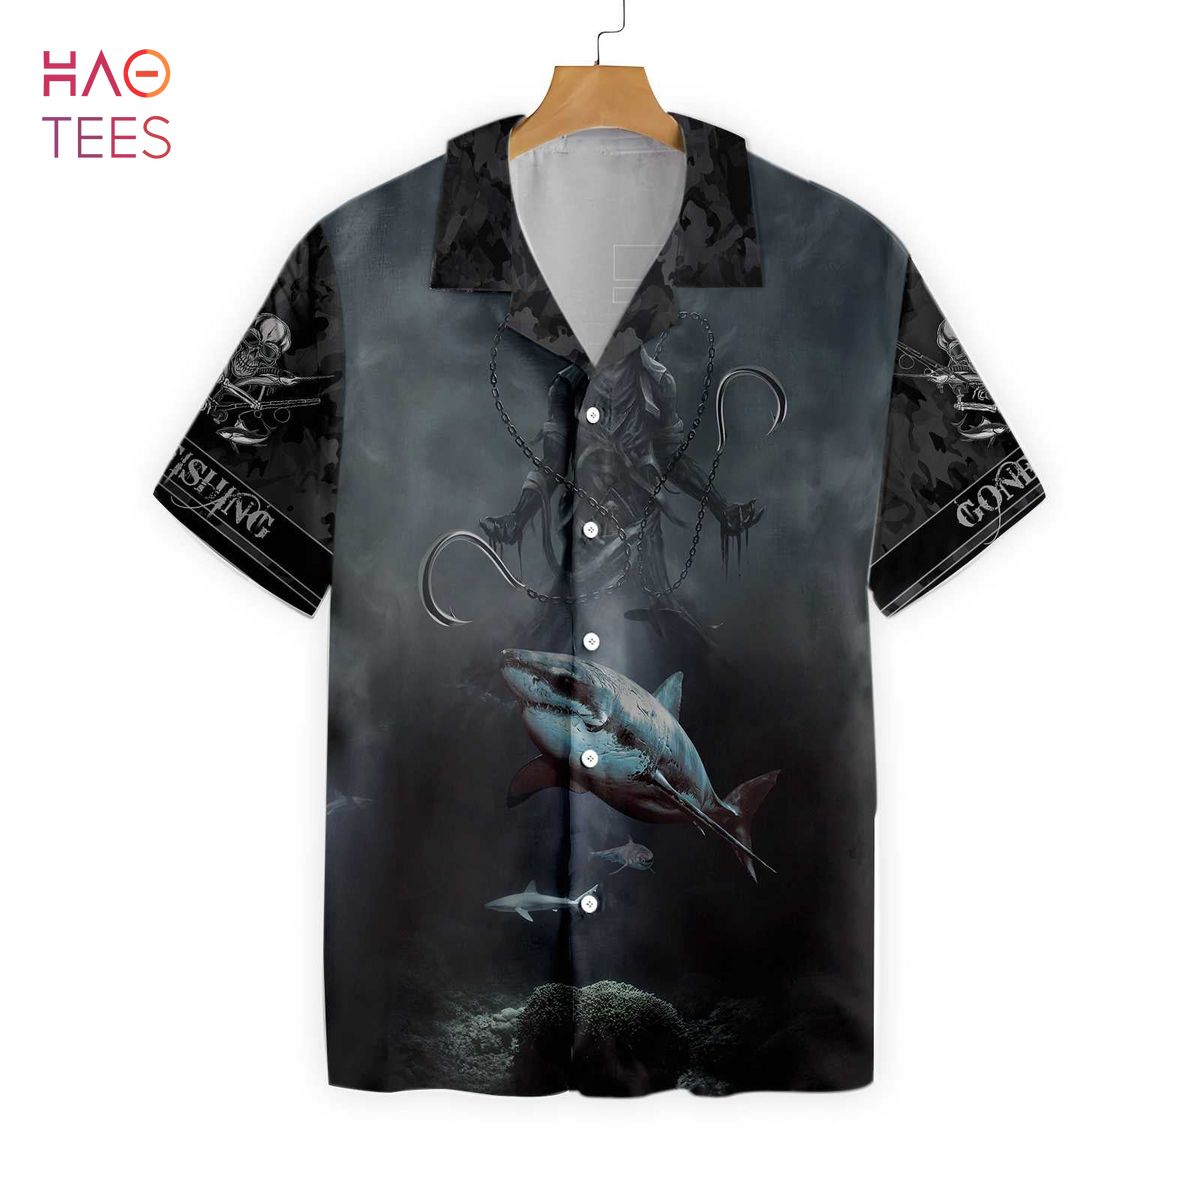 Fishing Because Murder Is Wrong Crazy Fishing Hawaiian Shirt